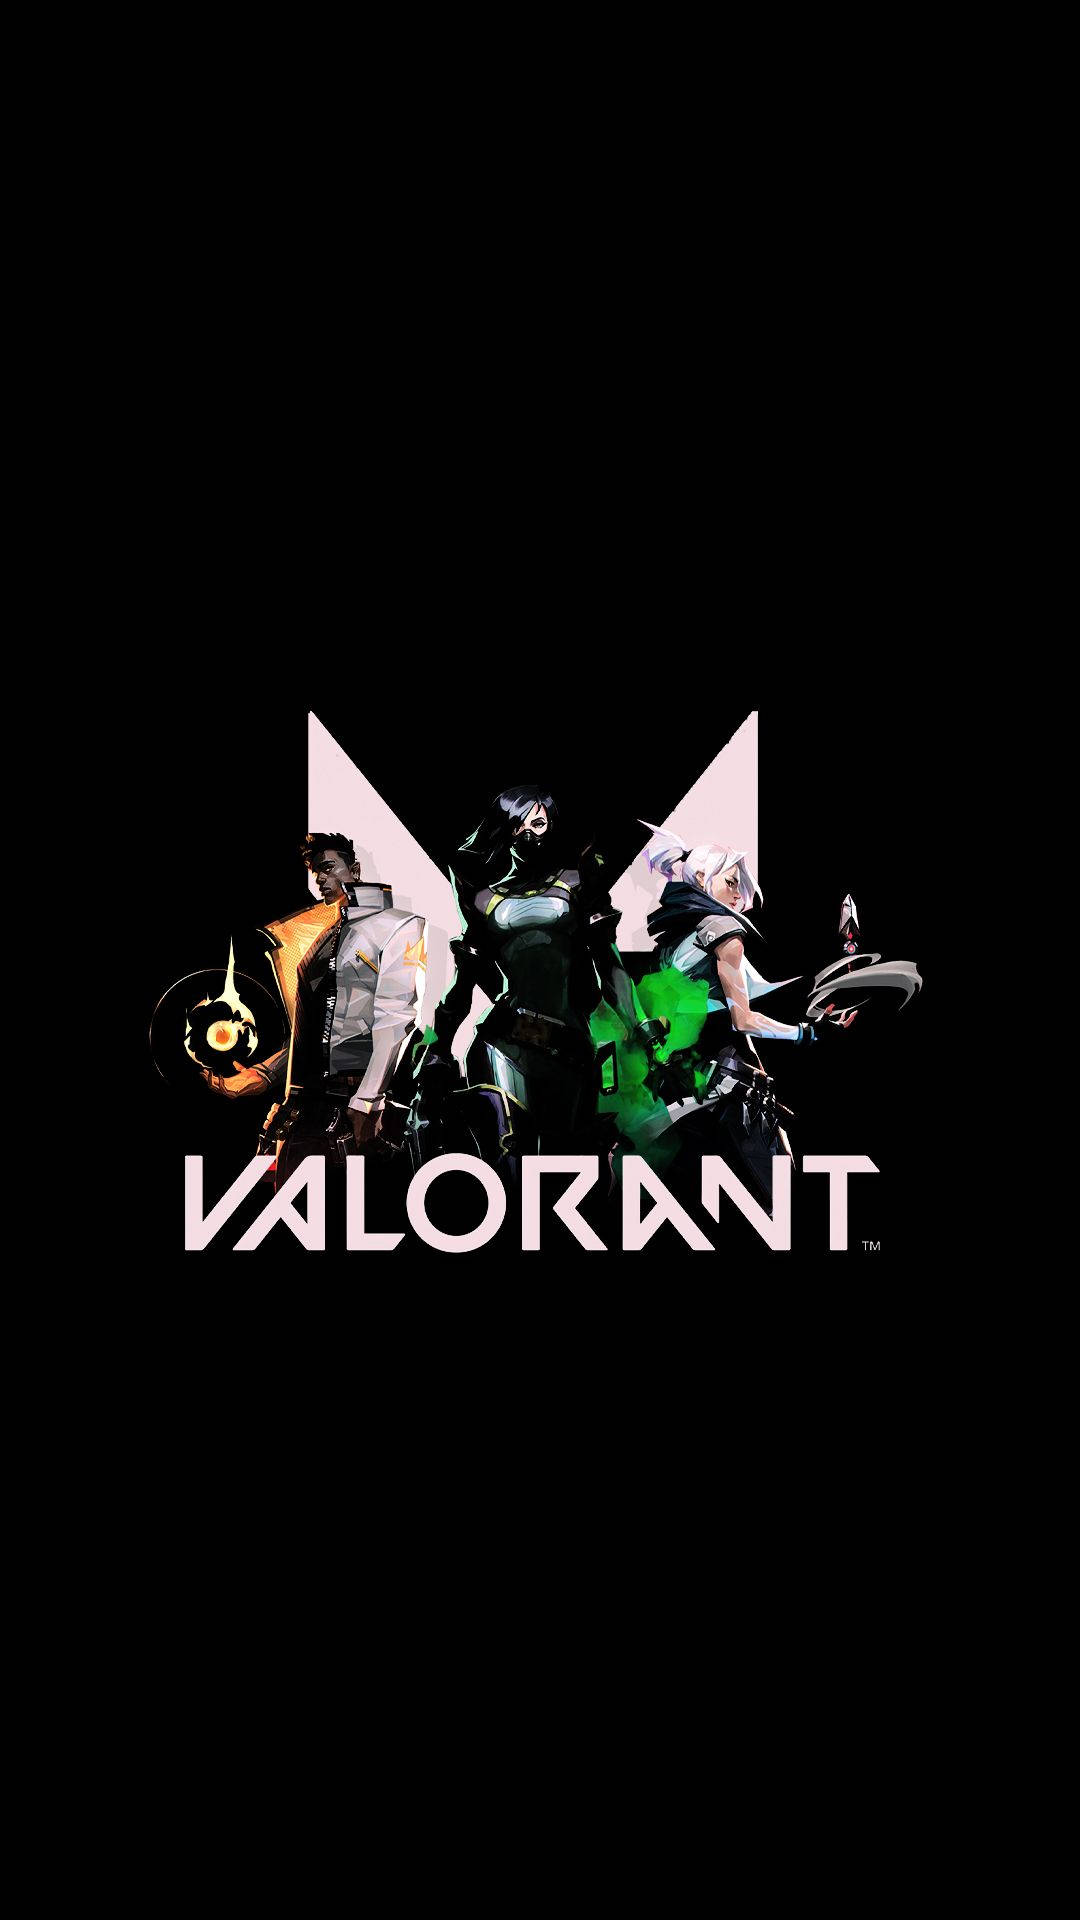 Fondos de pantalla de Valorant para PC y Móvil (Android & iPhone)